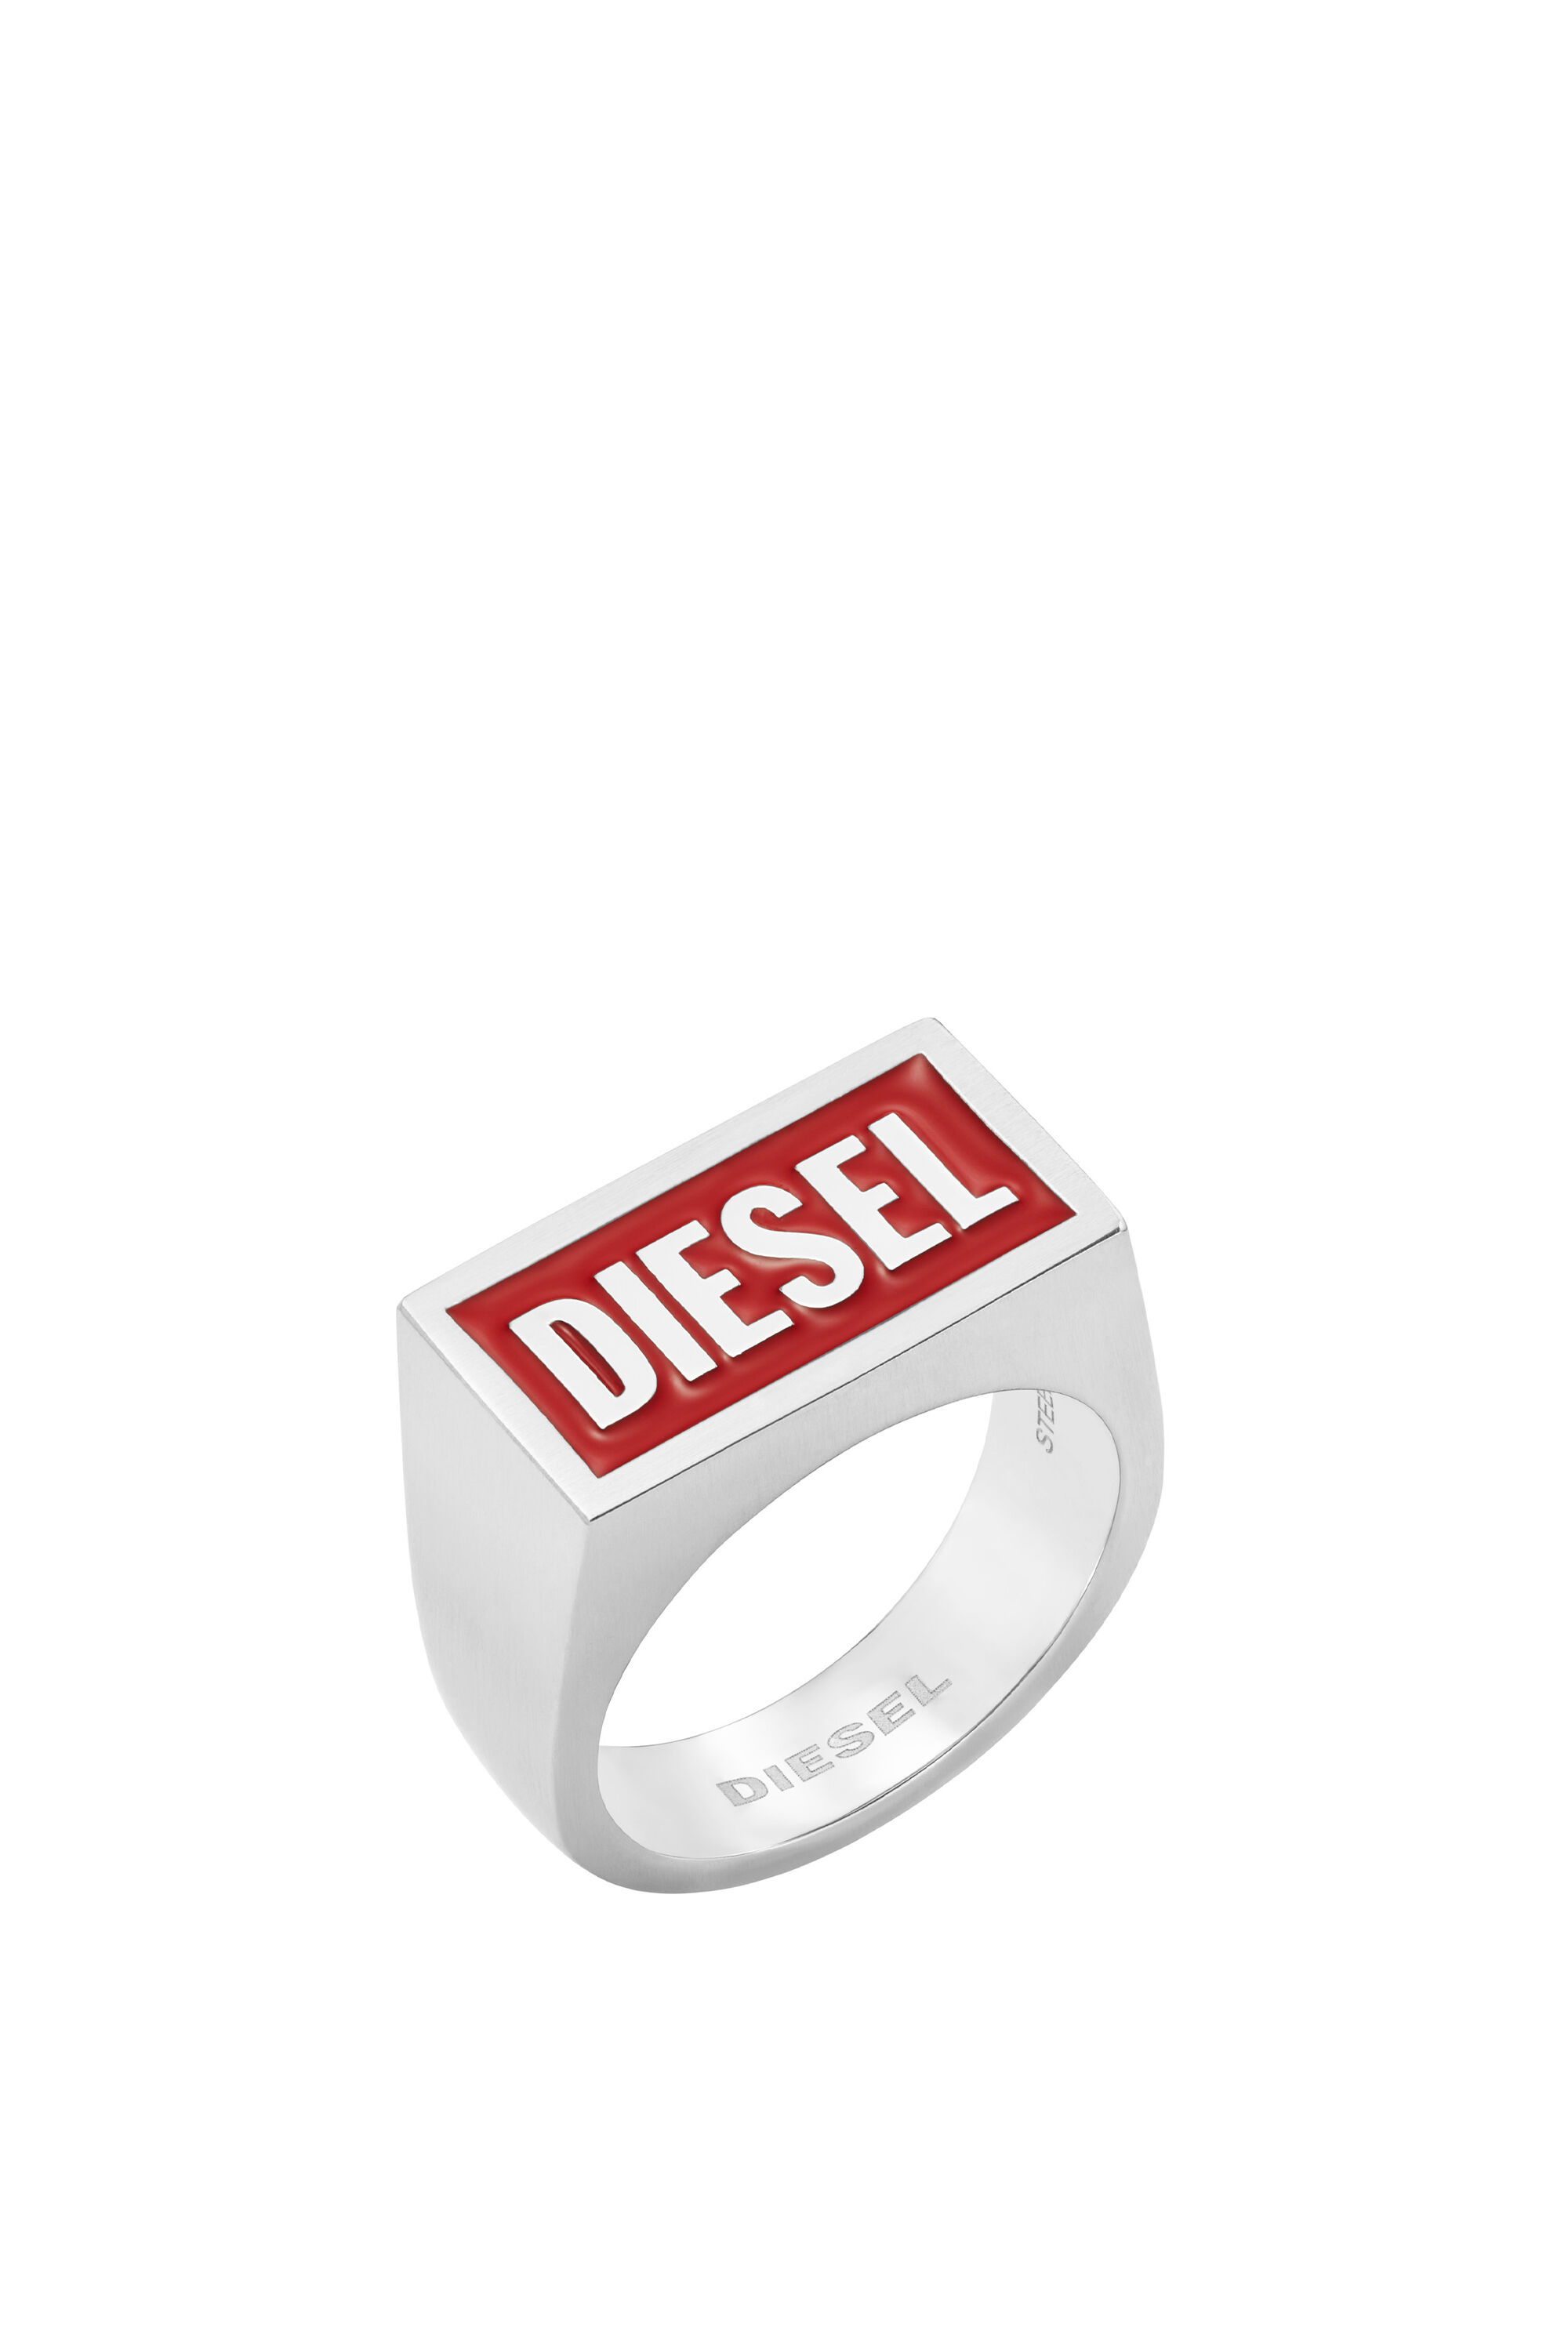 Diesel - DX1366, Silber - Image 1